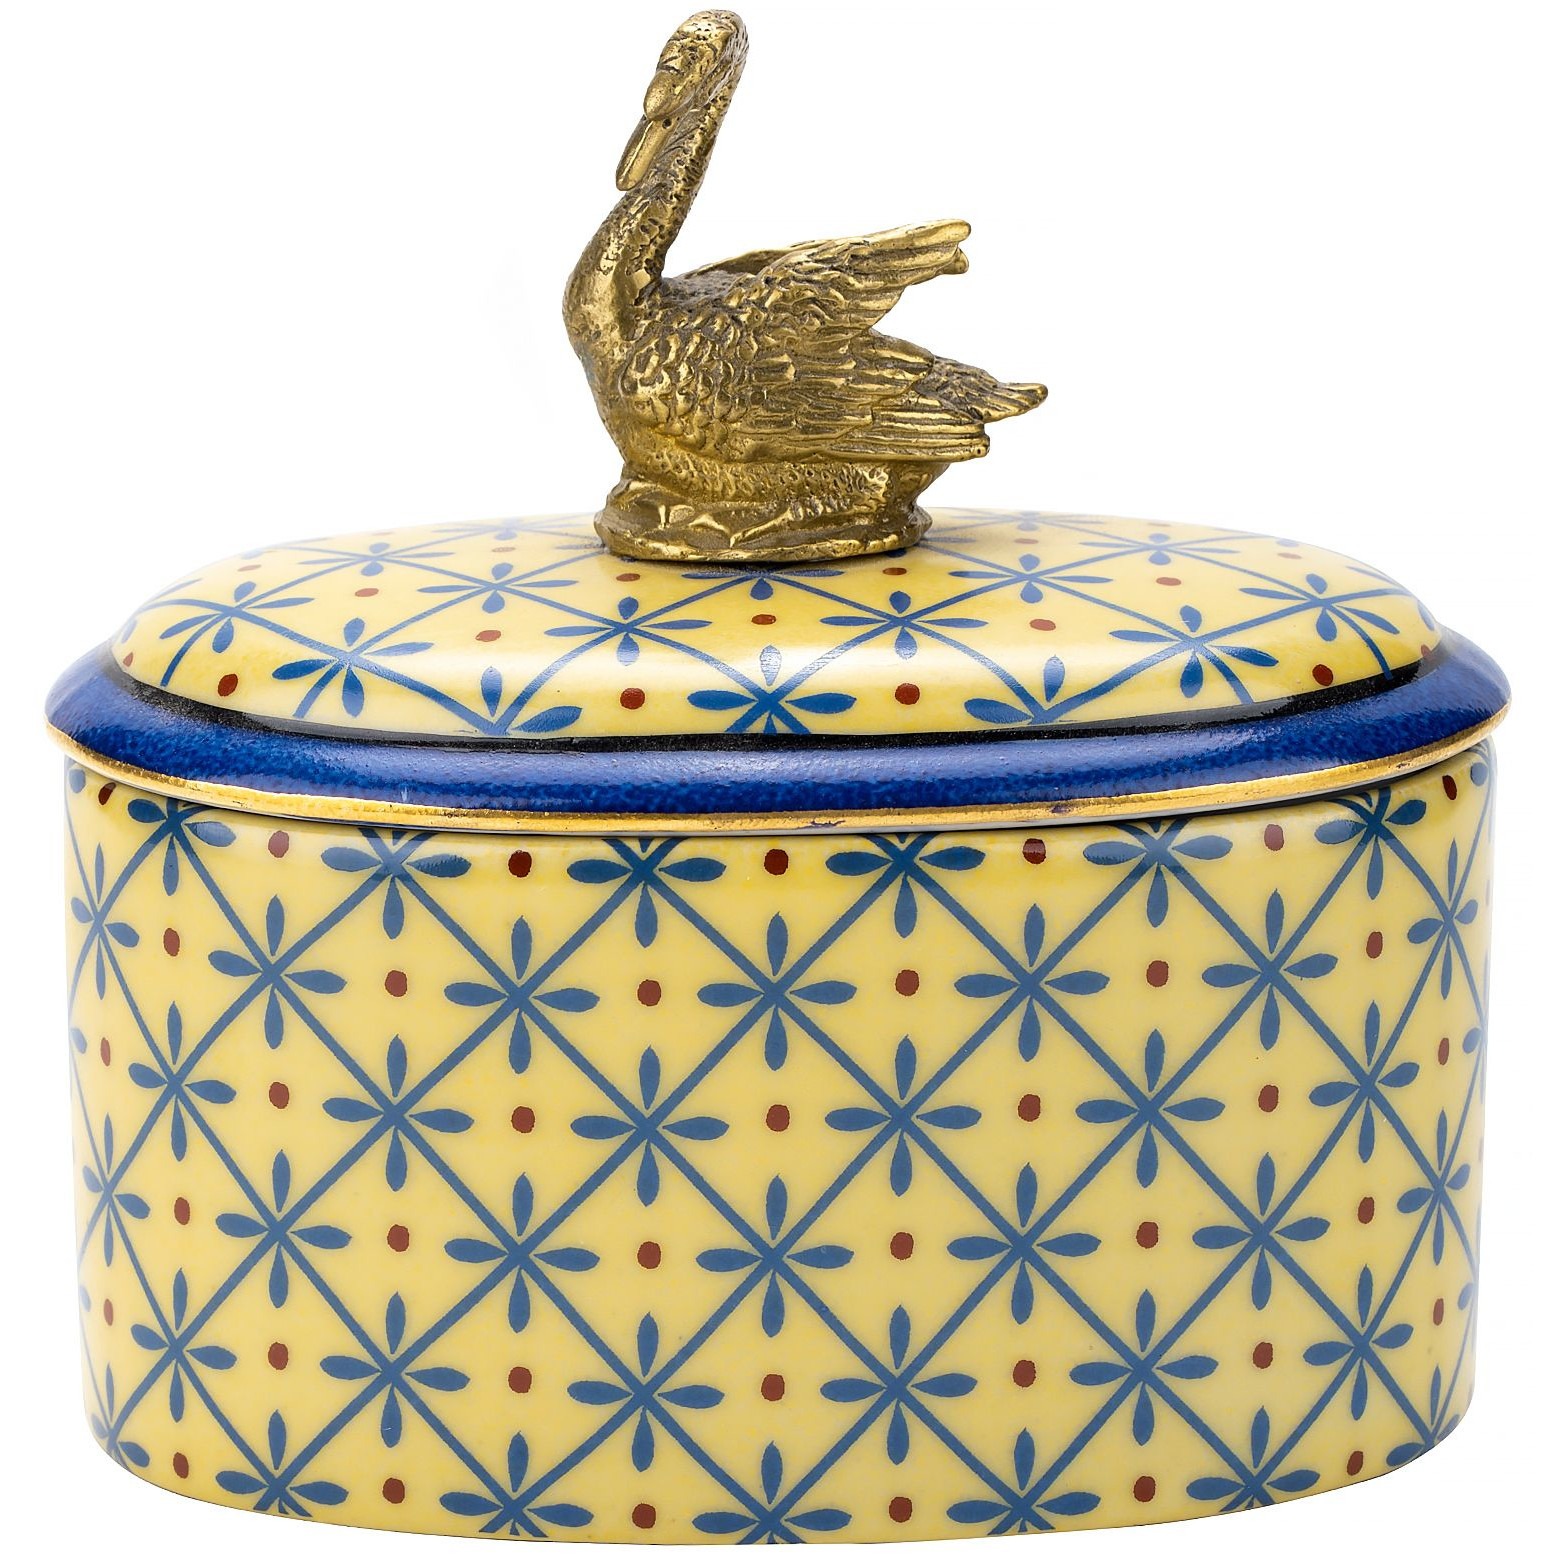 Шкатулка Glasar с лебедем желтая 13х9х12 см шкатулка glasar синяя с бронзовой стрекозой на ветке и очно птичьим принтом 17х12х13 см